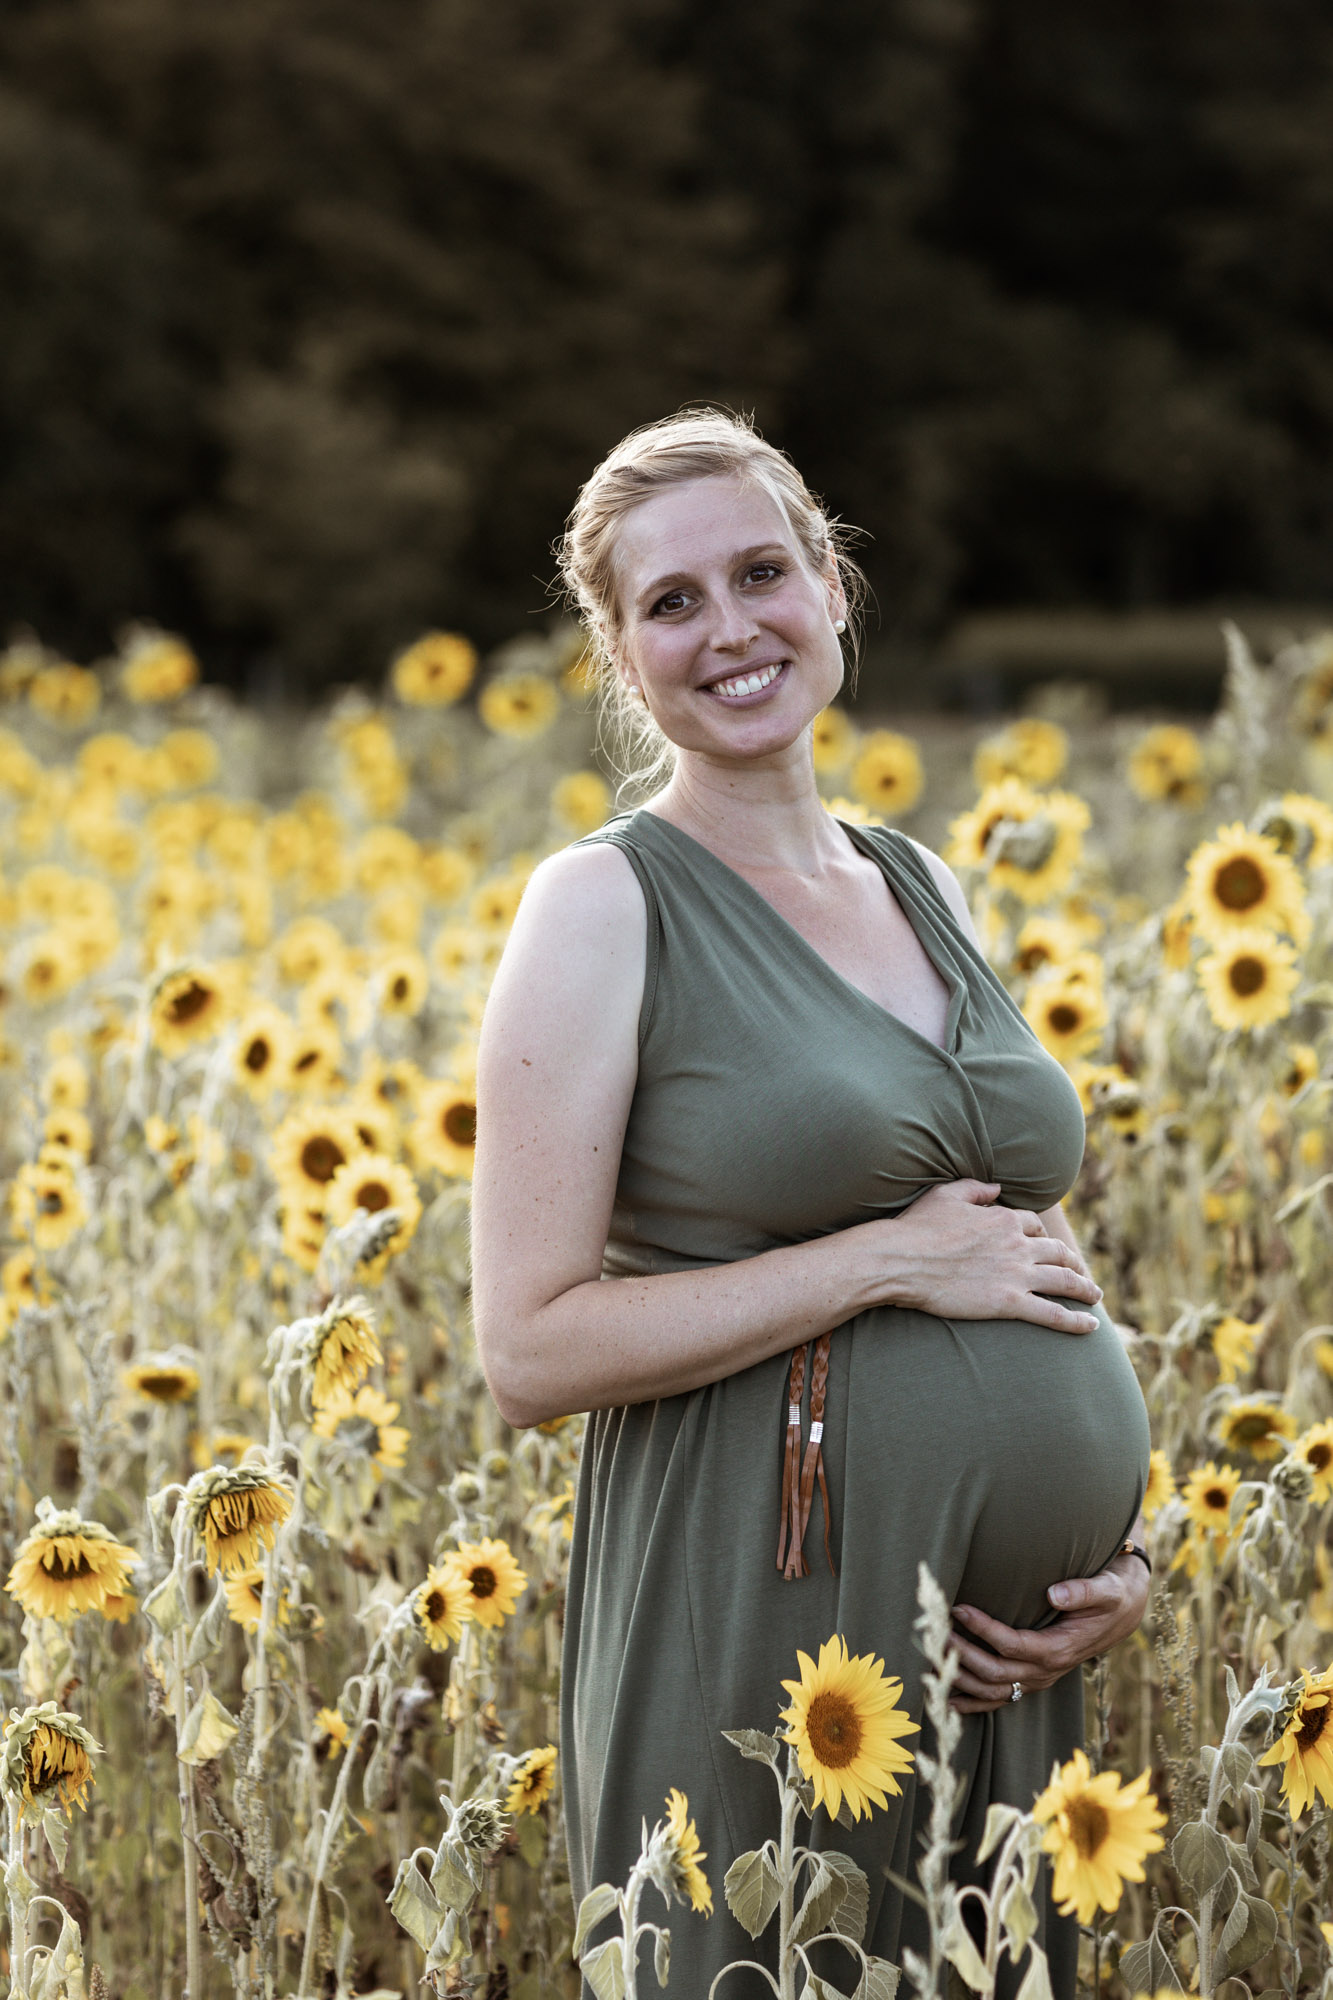 Babybauch und Familienfotoshooting in den Merian Gärten - Die werdende Mama im Sonnenblumenfeld